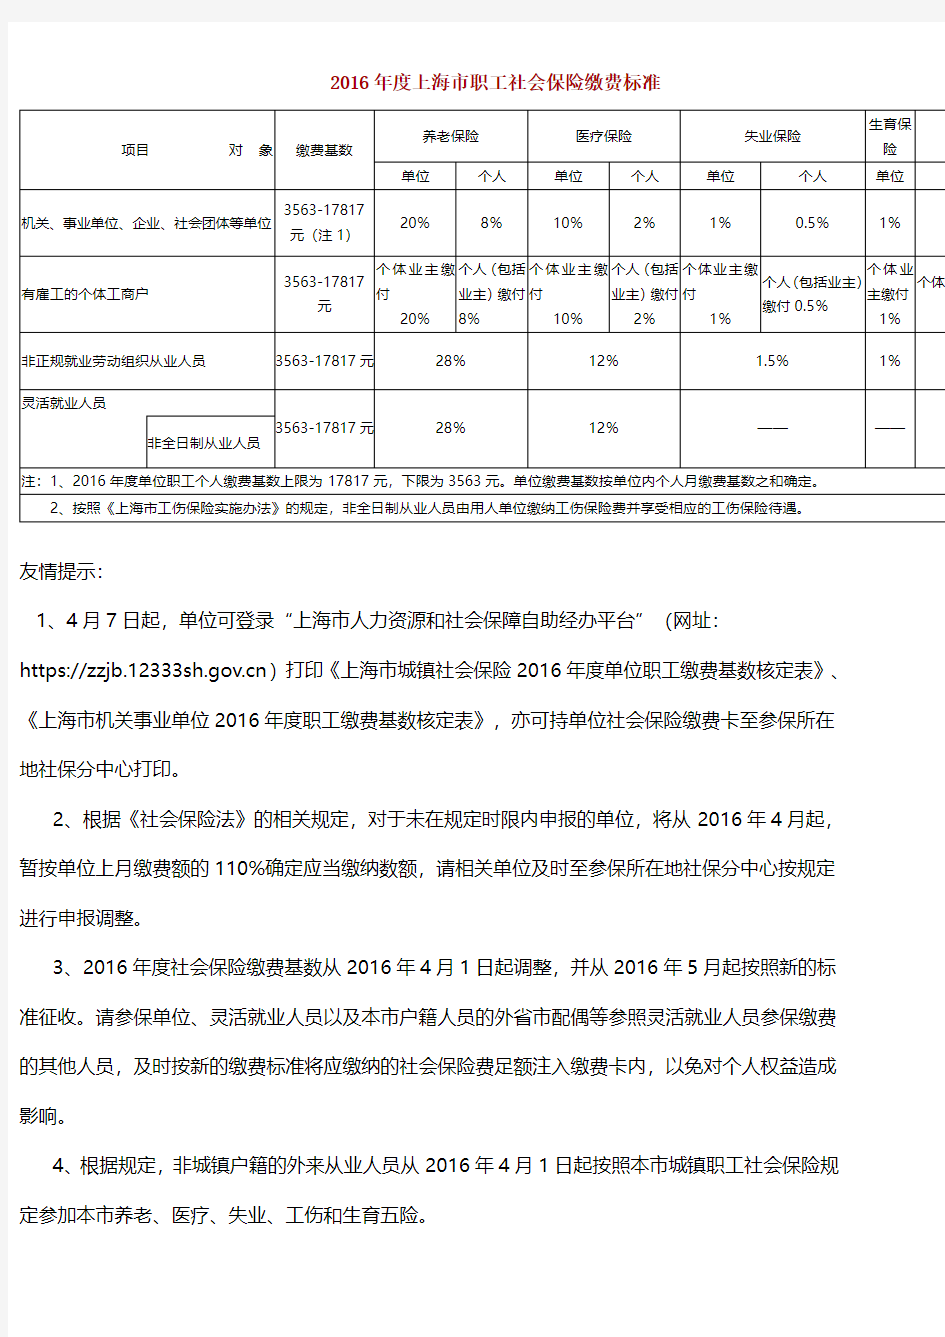 2016年度上海市职工社会保险缴费标准